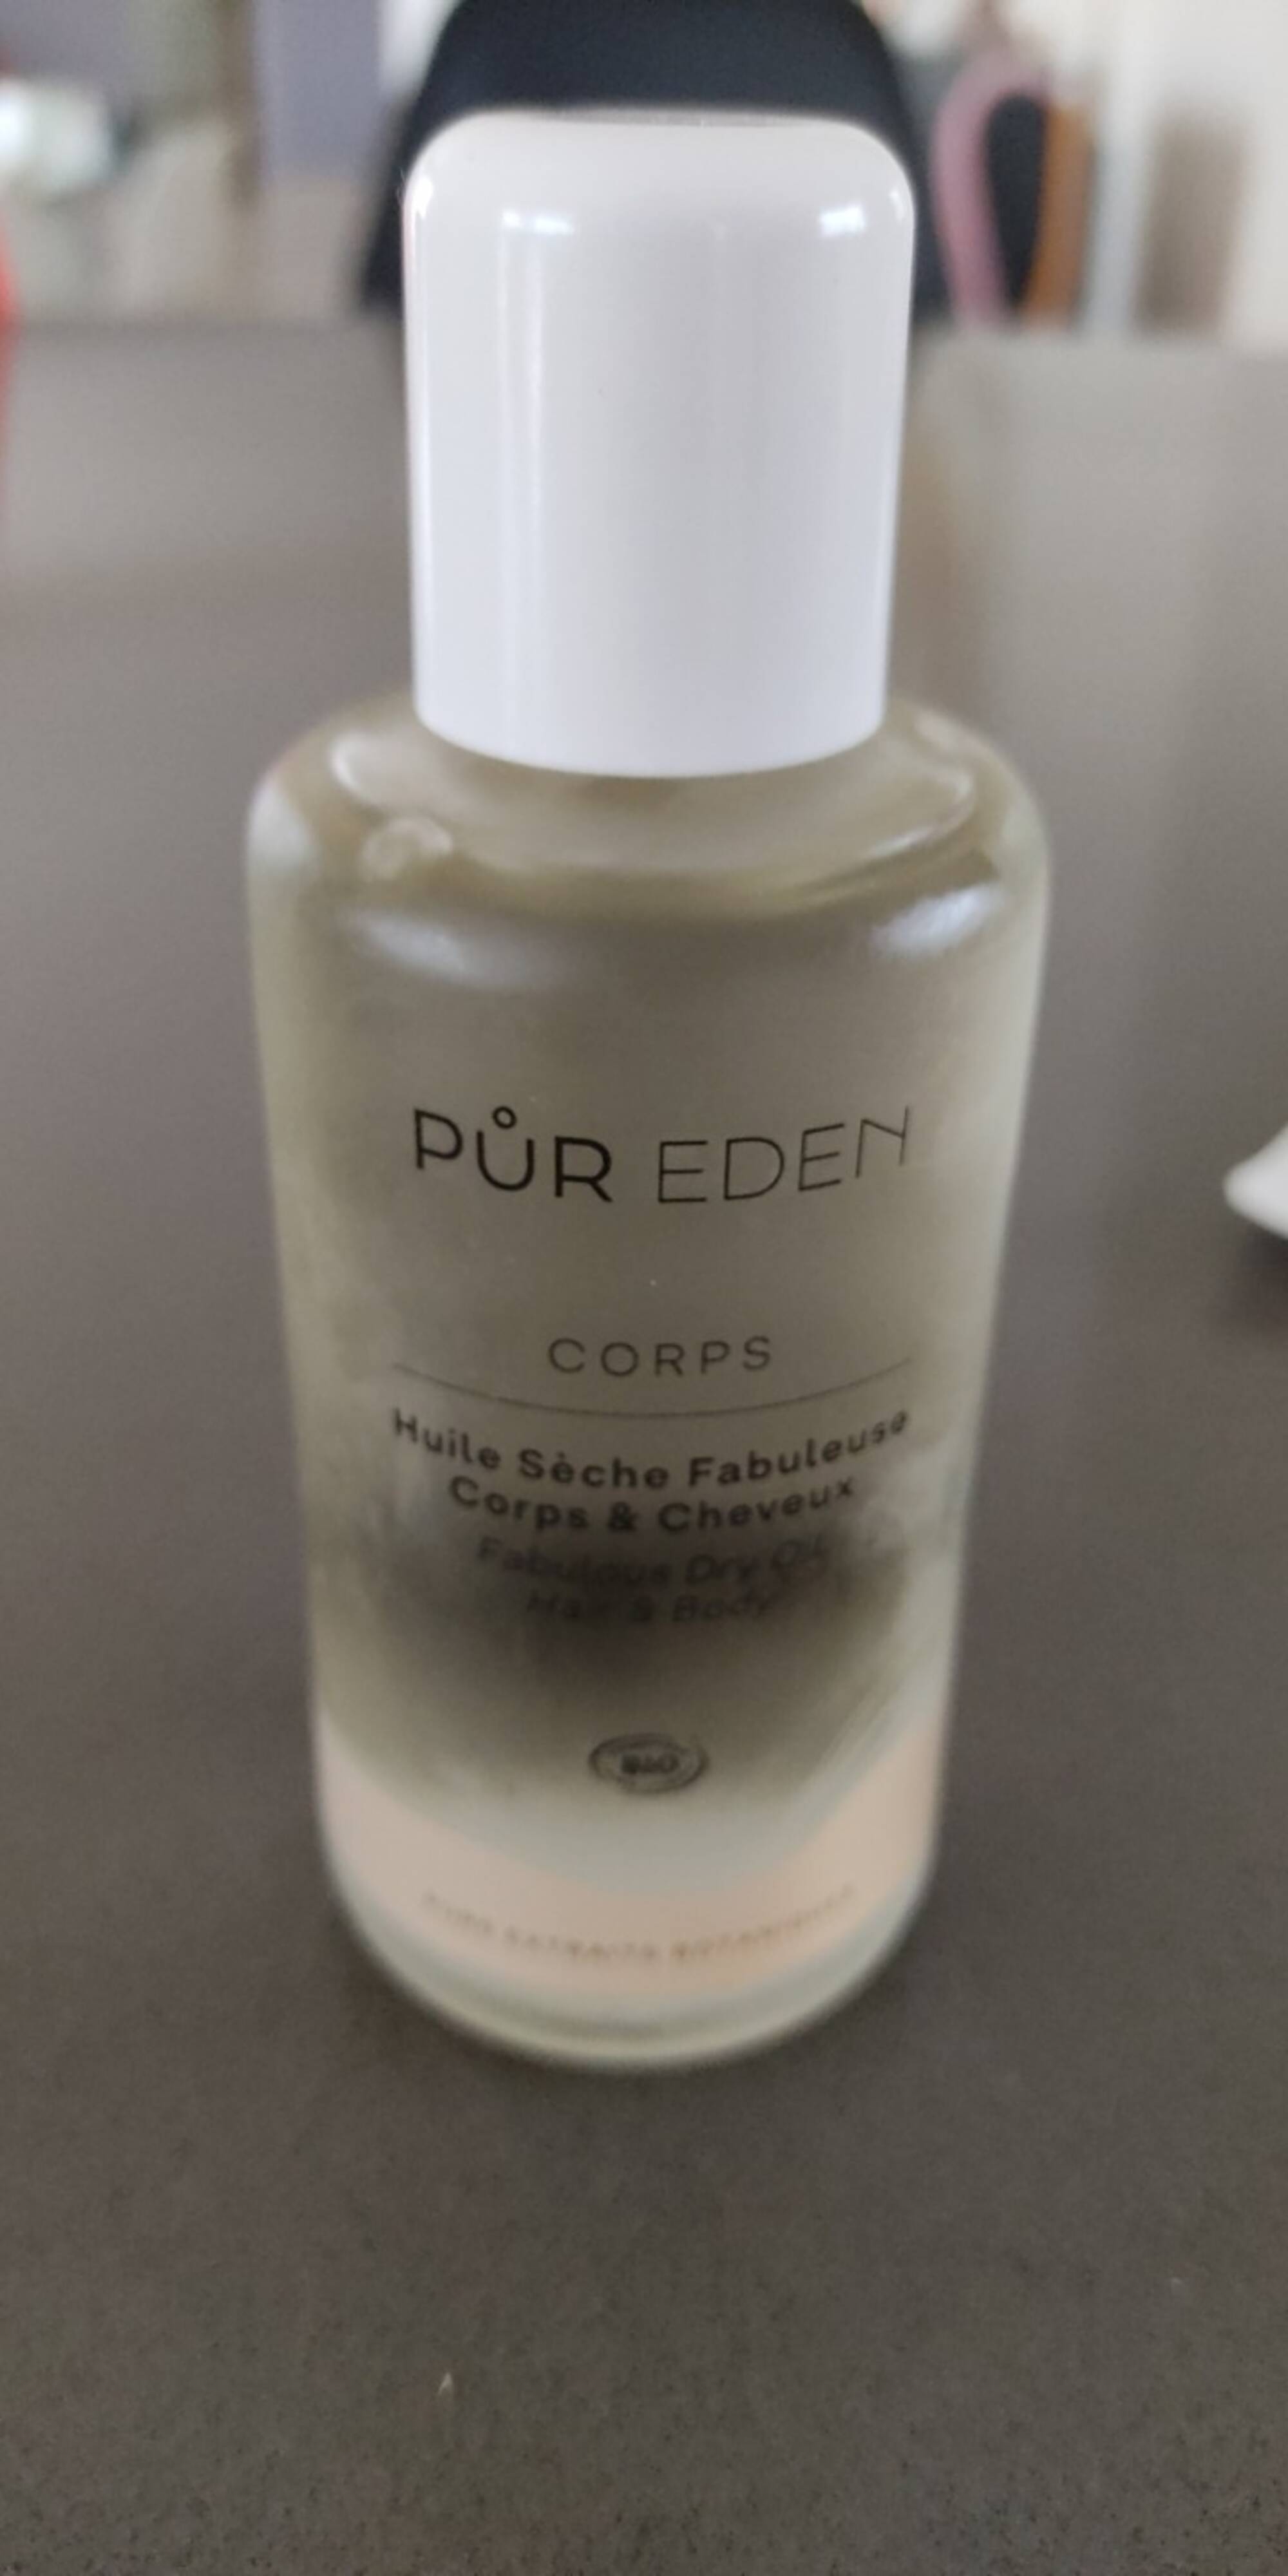 PUR EDEN - Corps - Huile sèche fabuleuse corps & cheveux